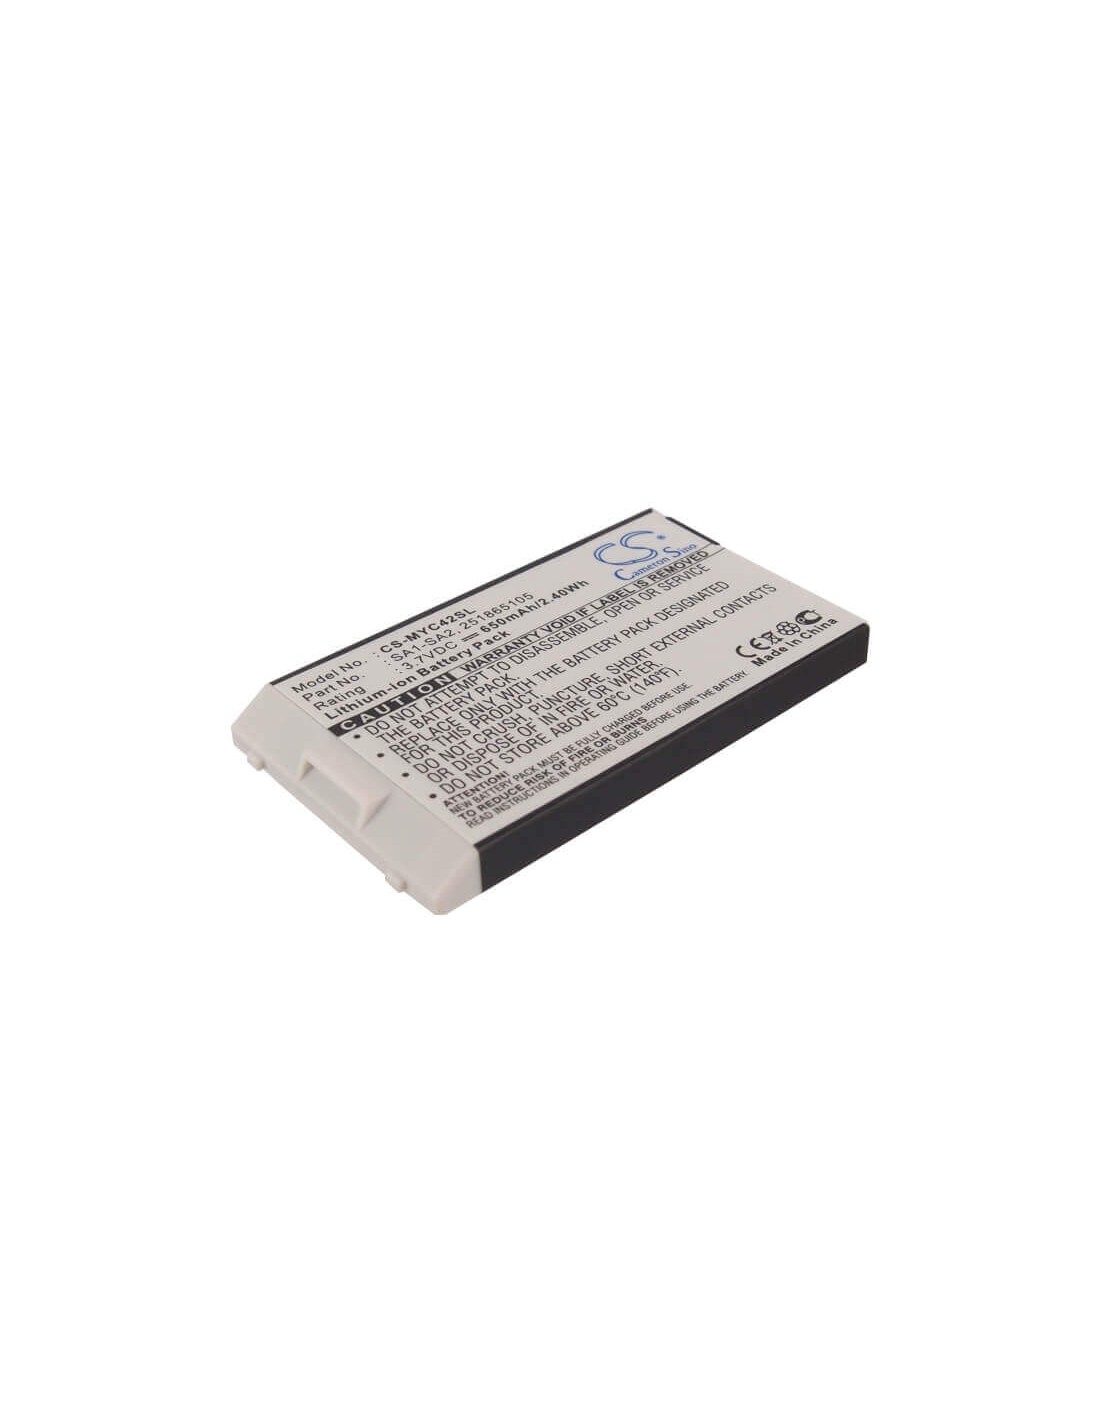 Battery for Sagem MYC4-2, MYC42, MY-C3-2 3.7V, 650mAh - 2.41Wh